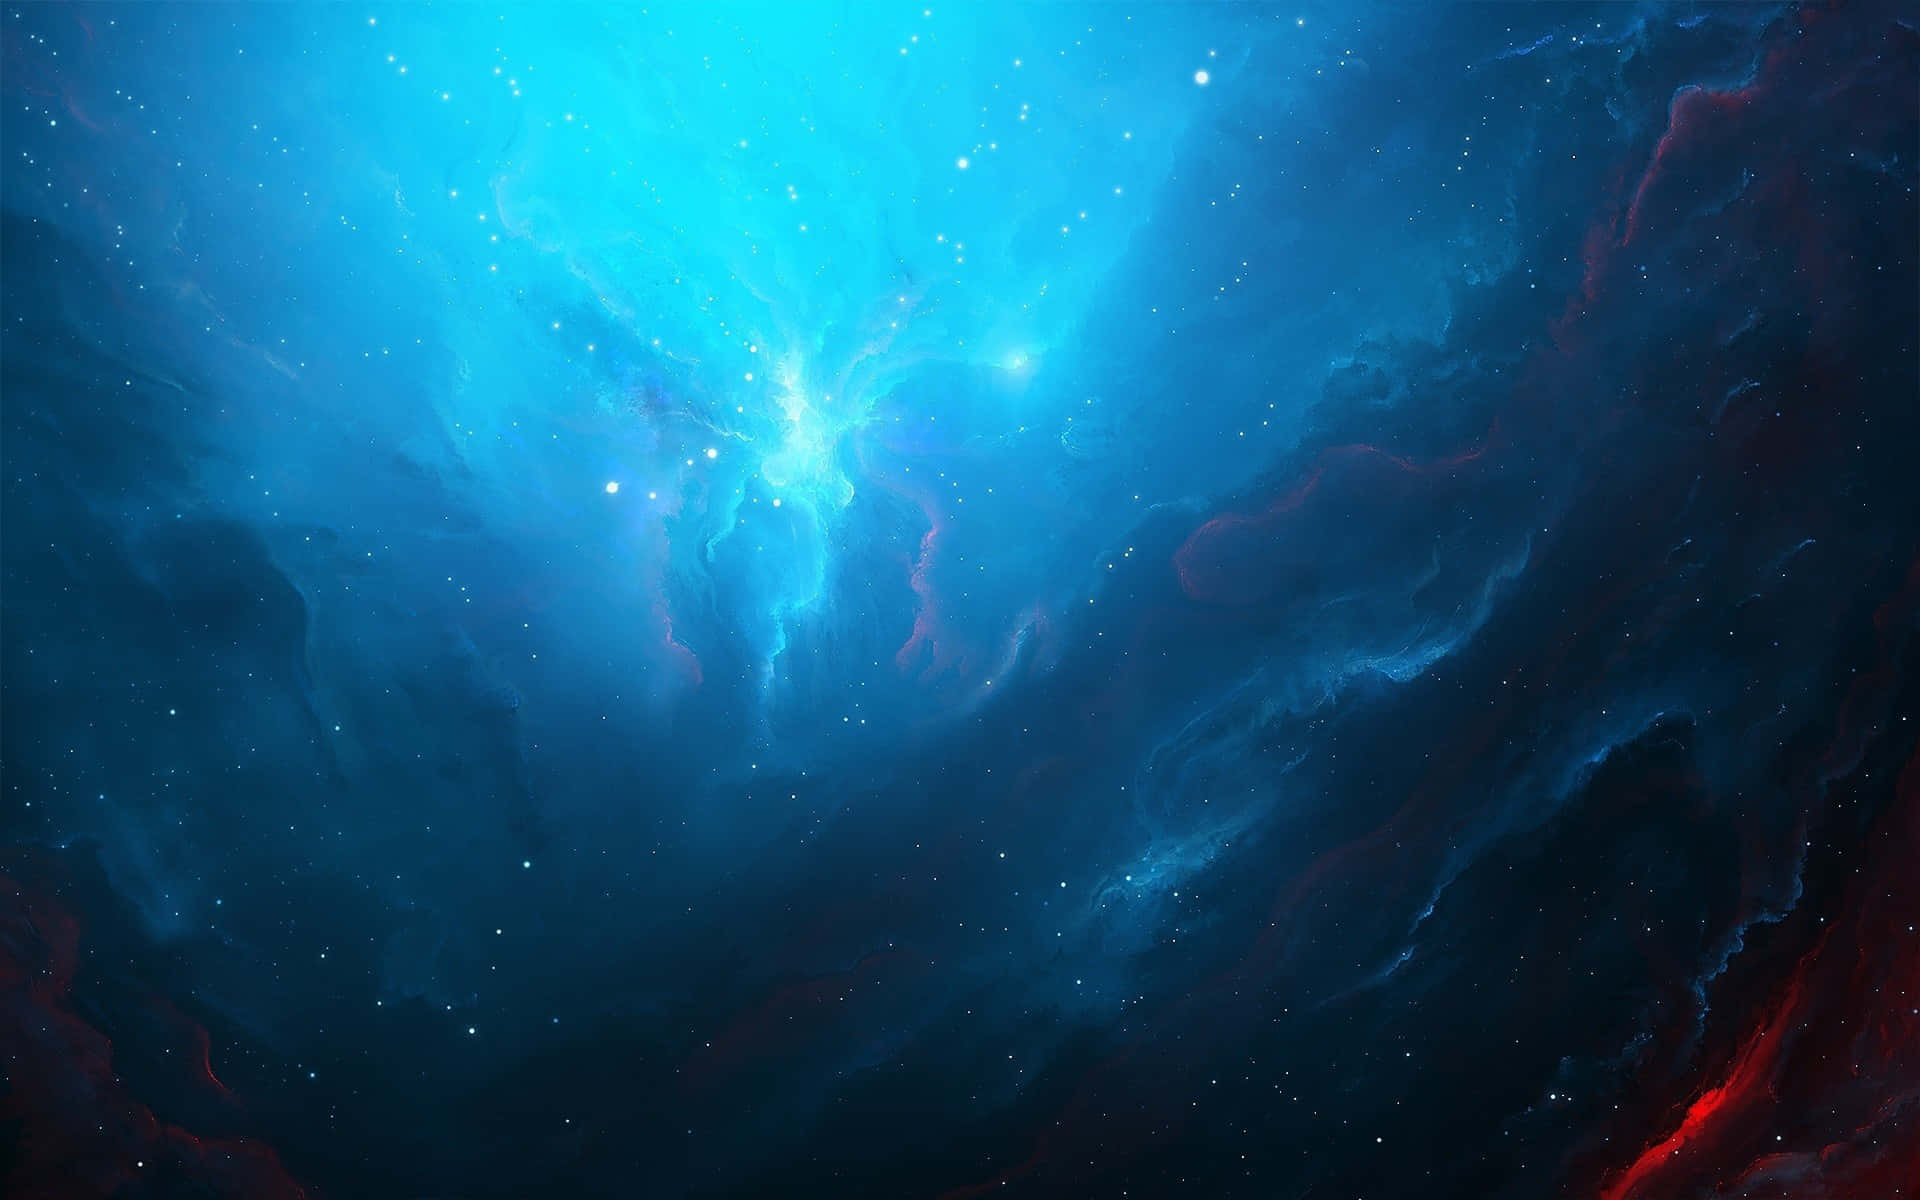 Levandeoch Färgstark, Denna Fantastiska Nebulosa Visar Upp Skönheten I Kosmos